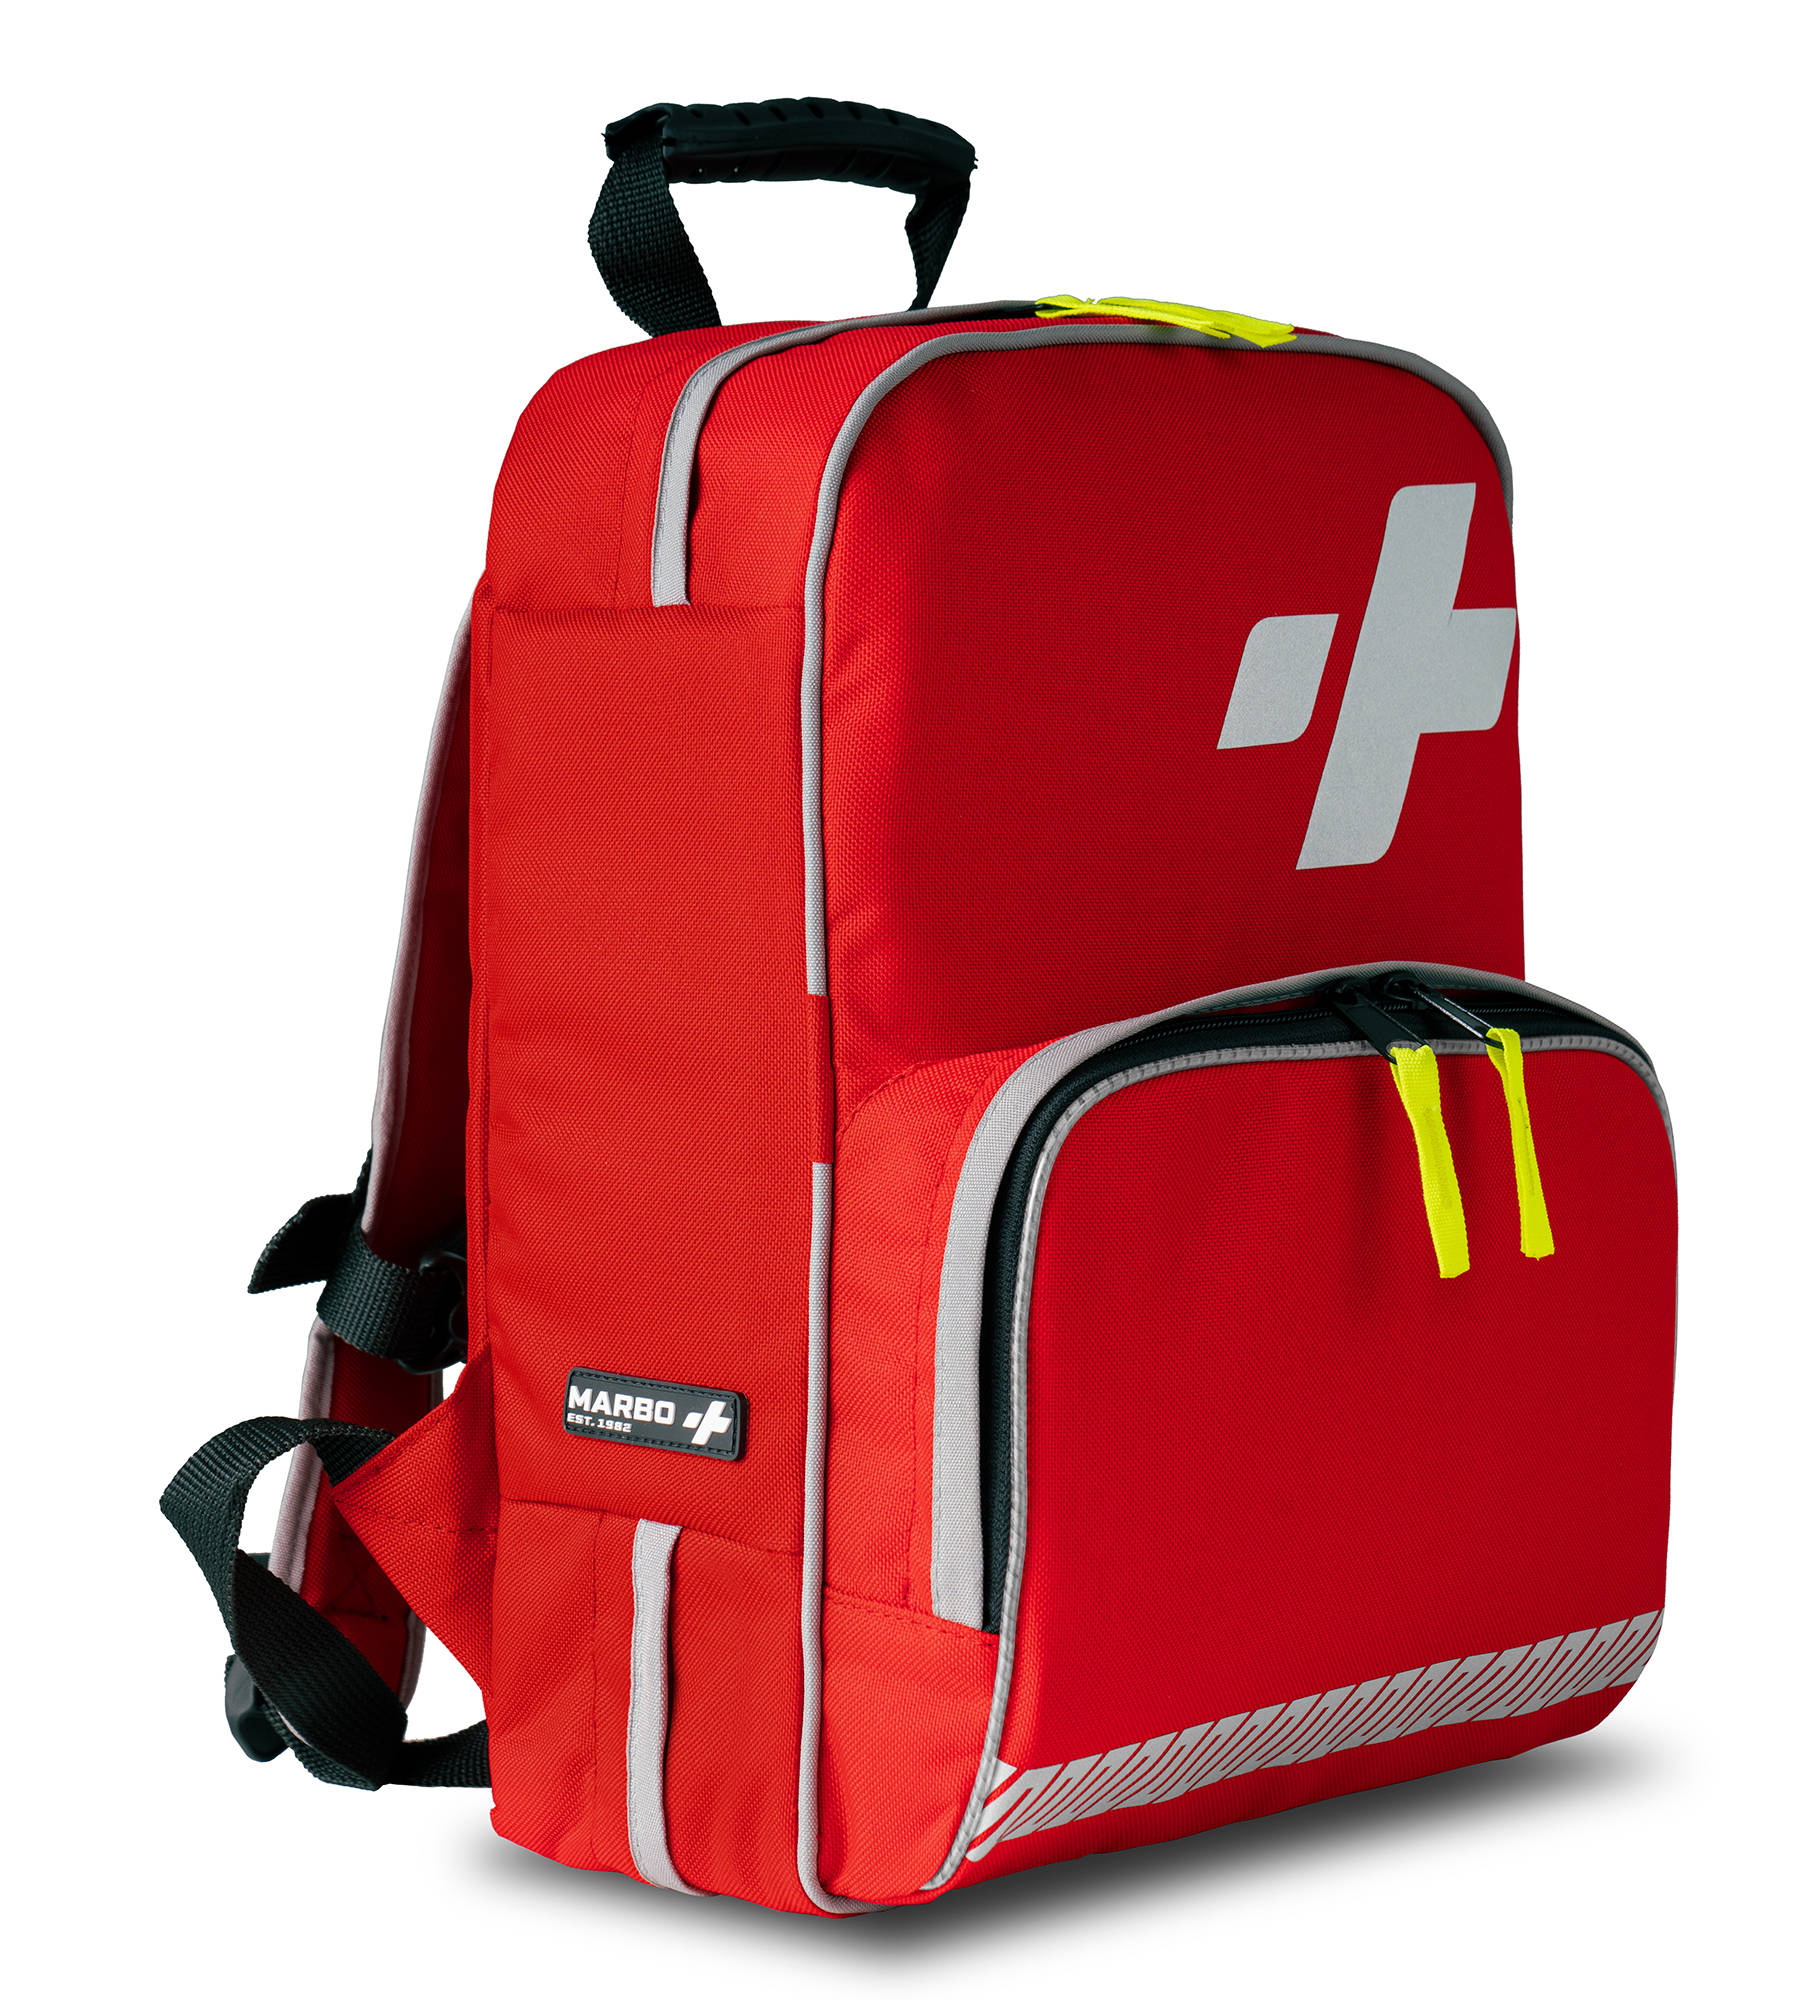 Rucksack Erste-Hilfe-Kasten 10l TRM-45_2.0 - rot